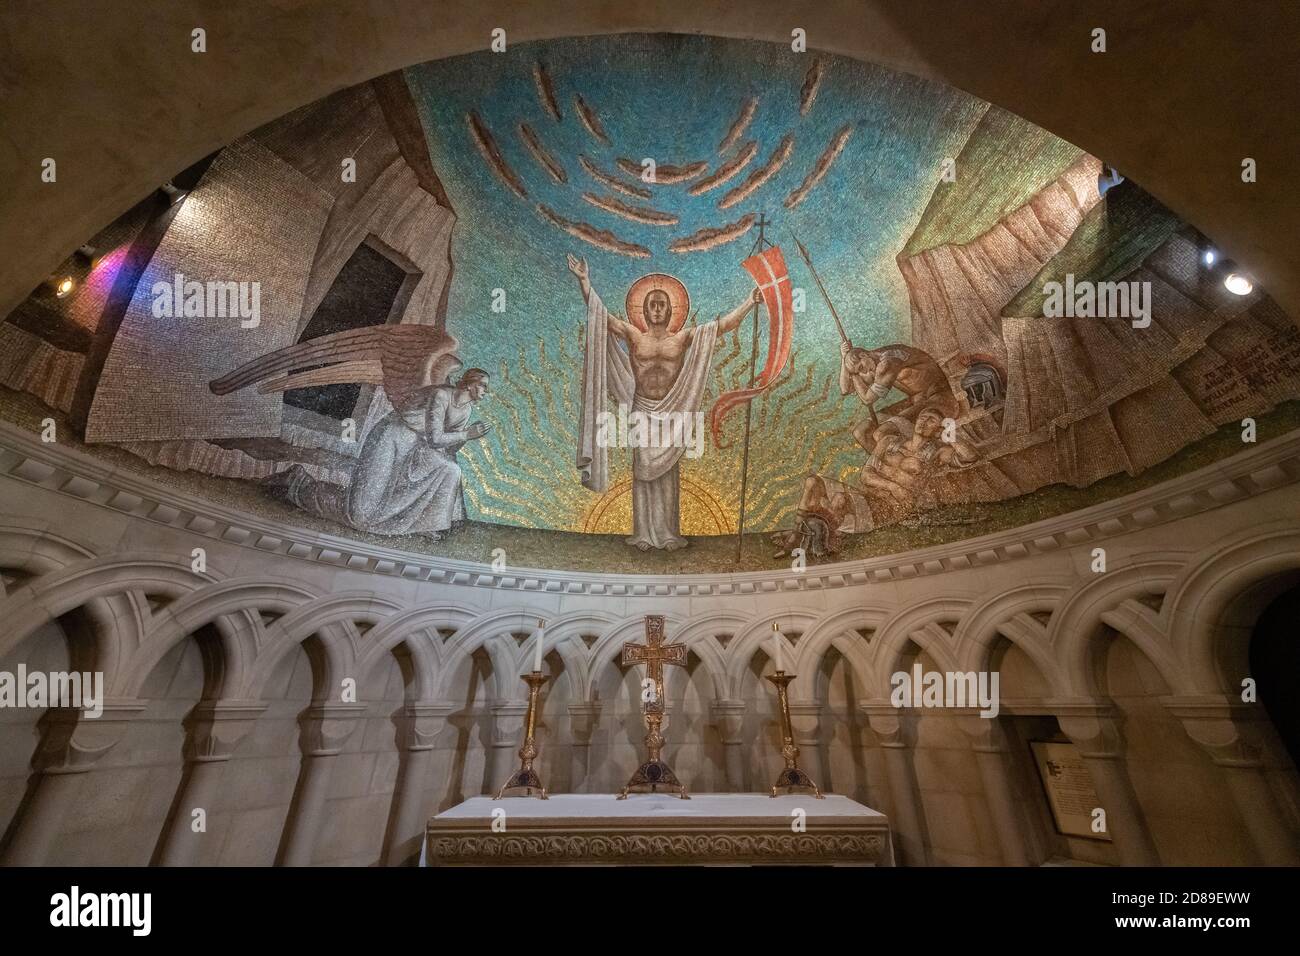 La mosaïque abside art déco de Hildreth Meière de la Résurrection dans la chapelle crypte de la Résurrection de la cathédrale nationale de Washington. Banque D'Images